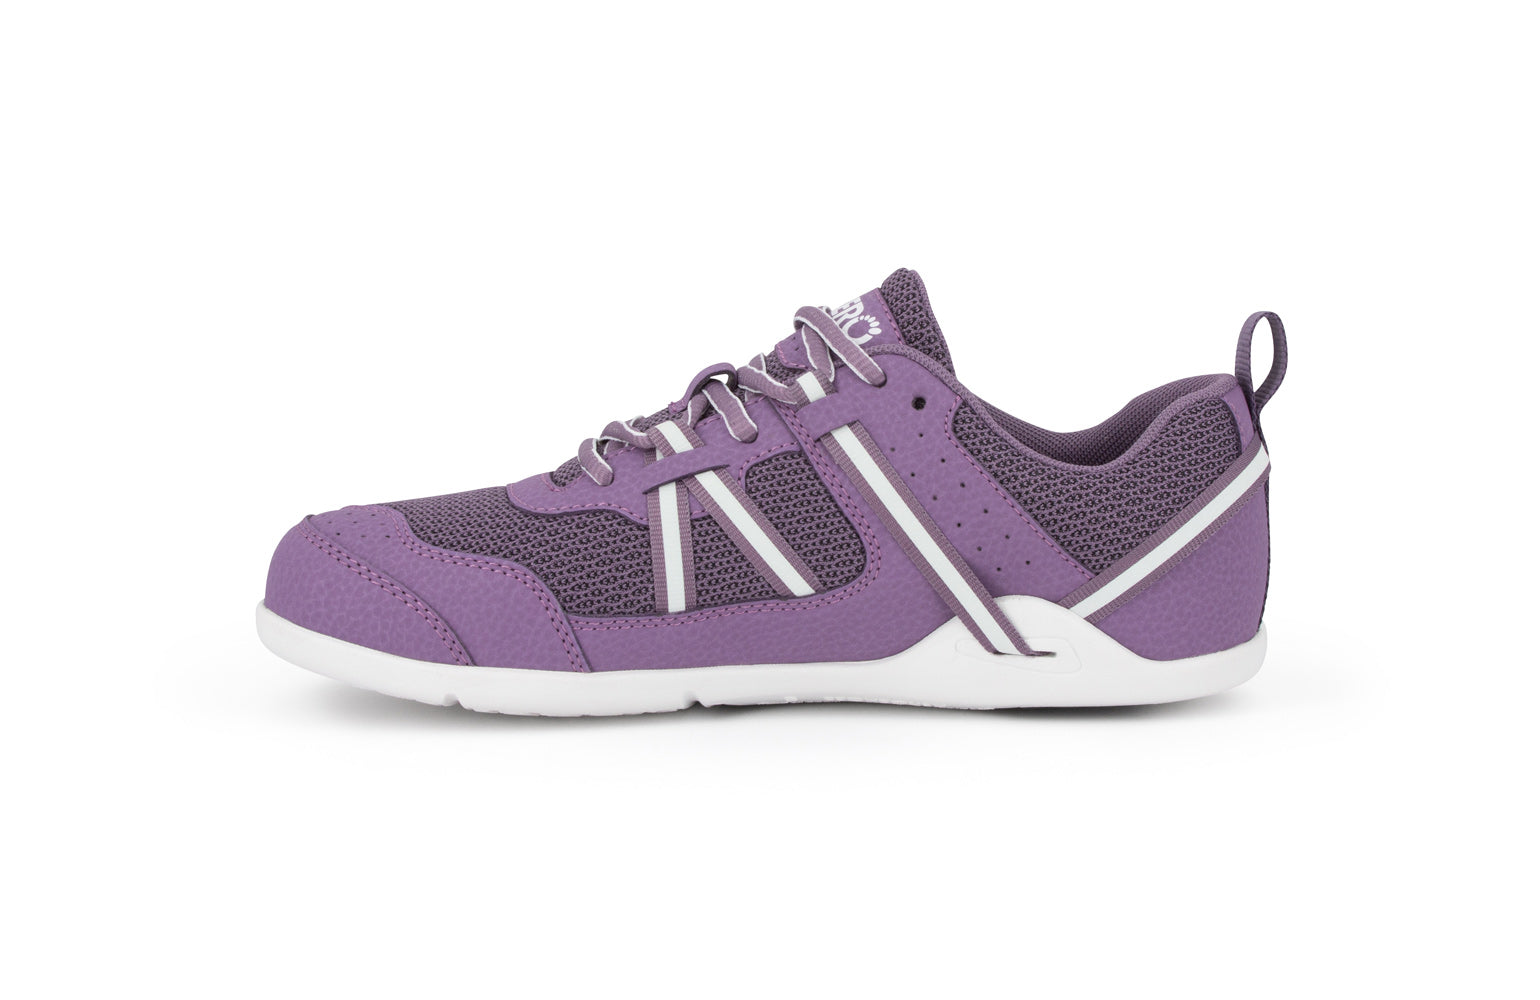 Xero Shoes Prio Kids barfods træningssko/sneakers til børn i farven violet, inderside